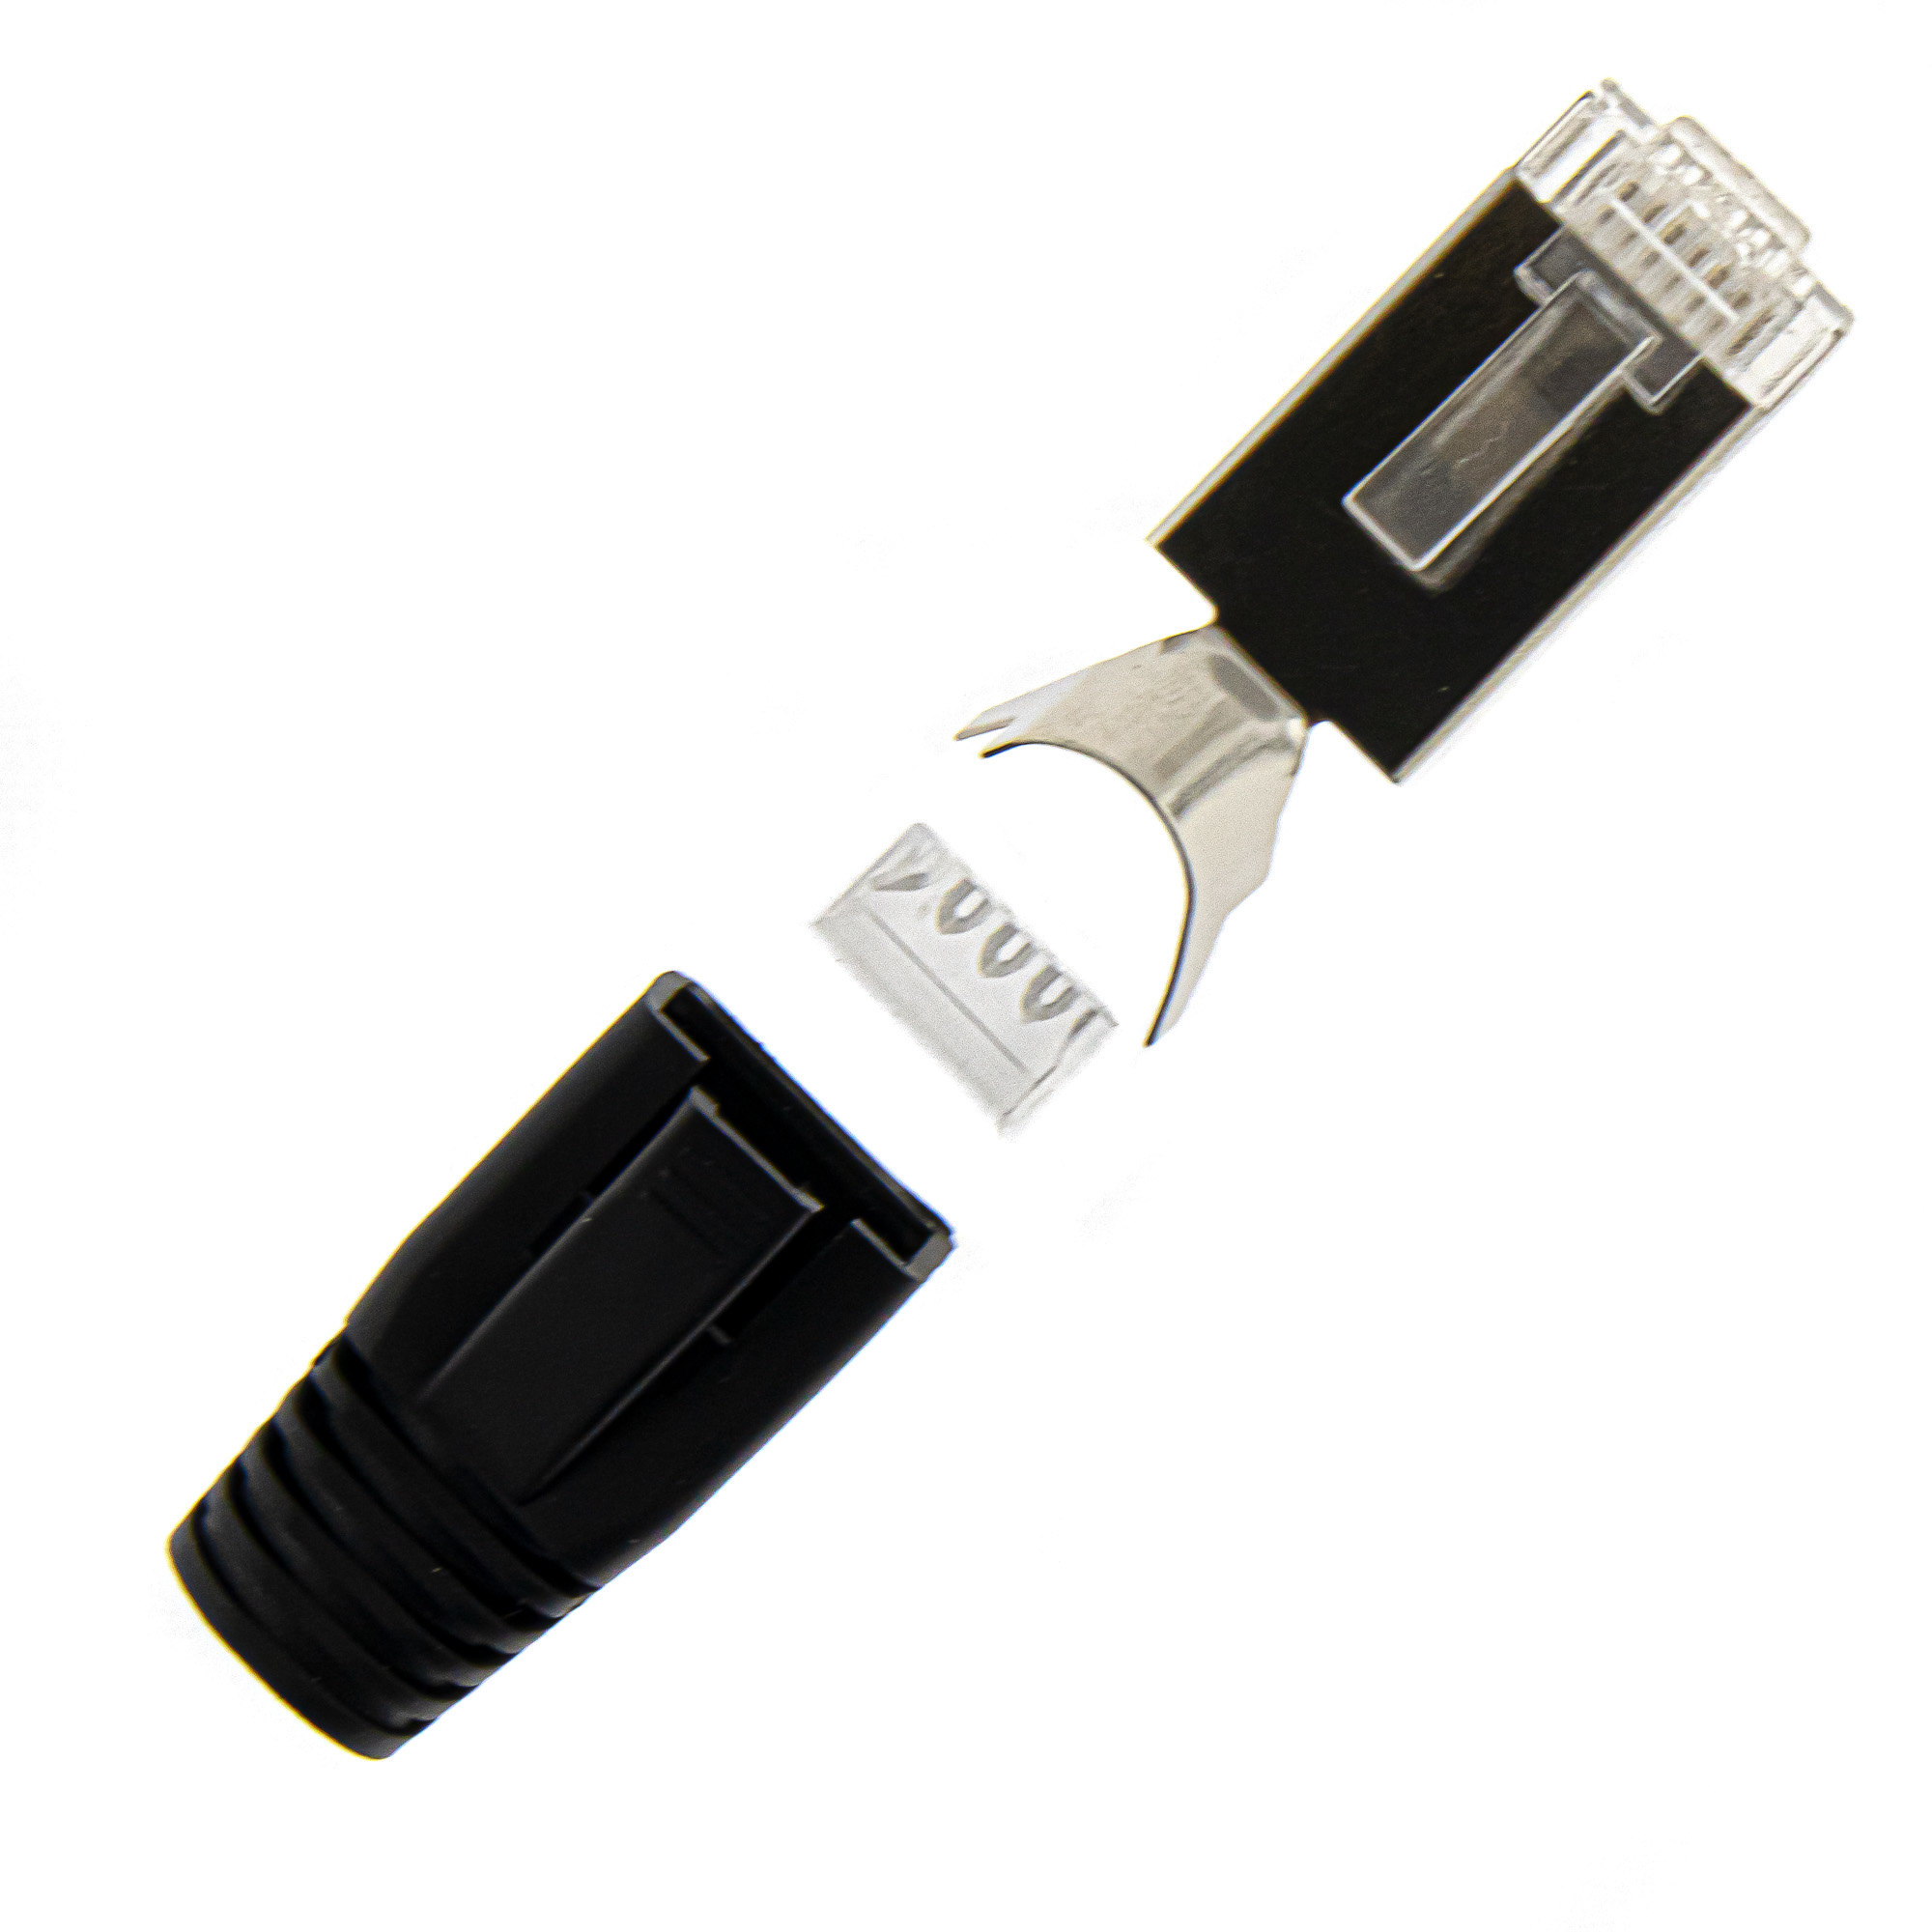 RJ45 connector + insertion aid + plug cap 10PCS - black